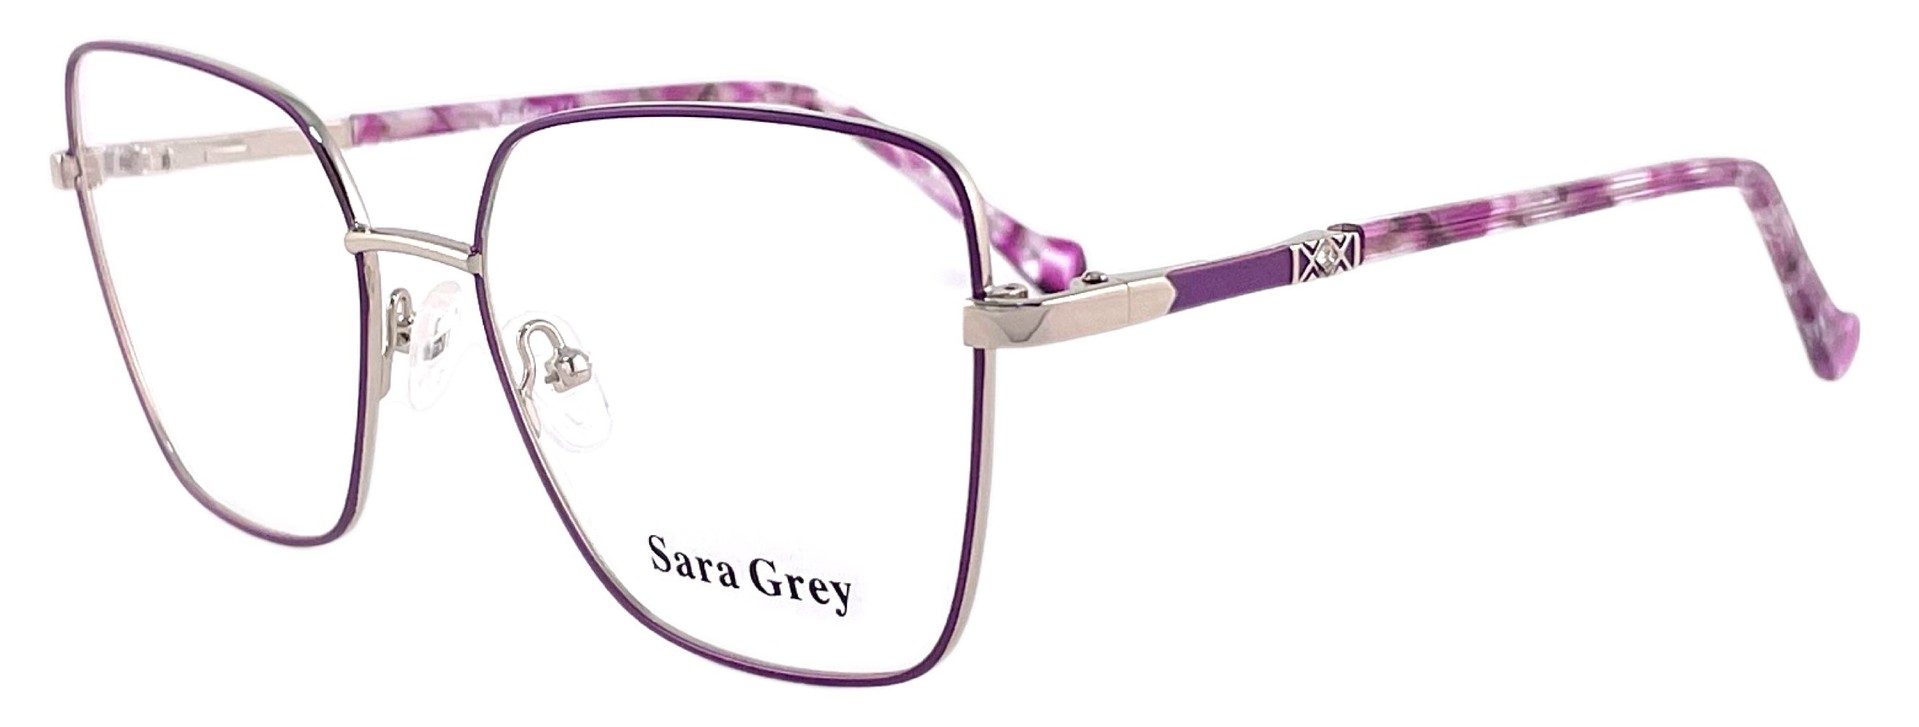 Sara Grey XC62162 C3 2